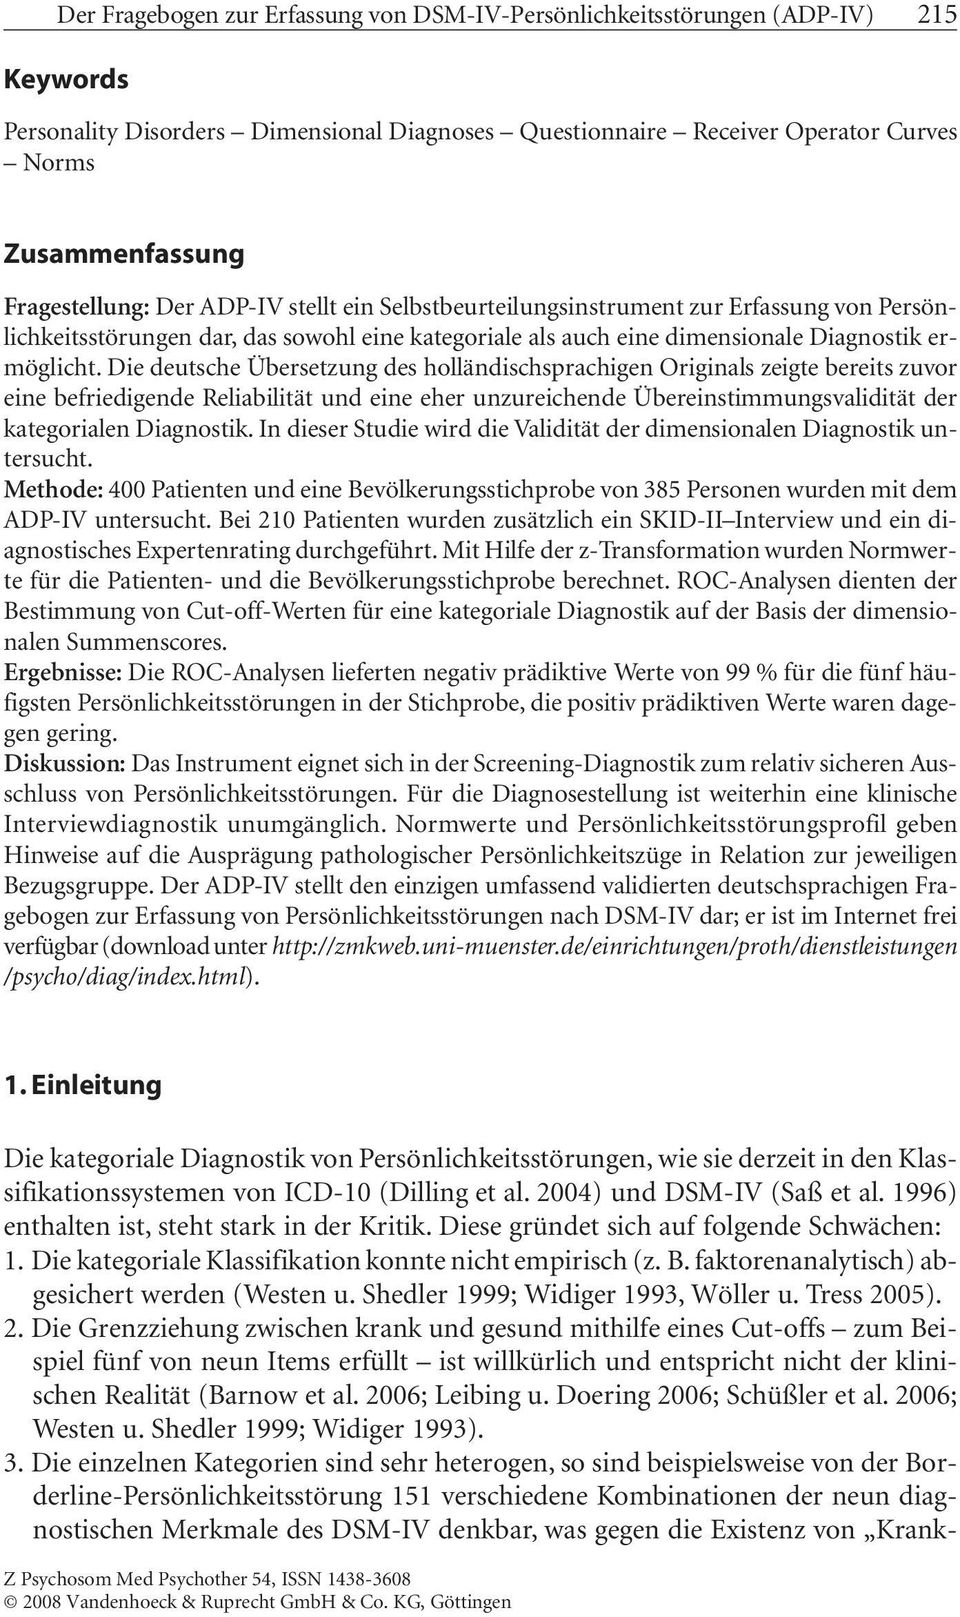 Die deutsche Übersetzung des holländischsprachigen Originals zeigte bereits zuvor eine befriedigende Reliabilität und eine eher unzureichende Übereinstimmungsvalidität der kategorialen Diagnostik.